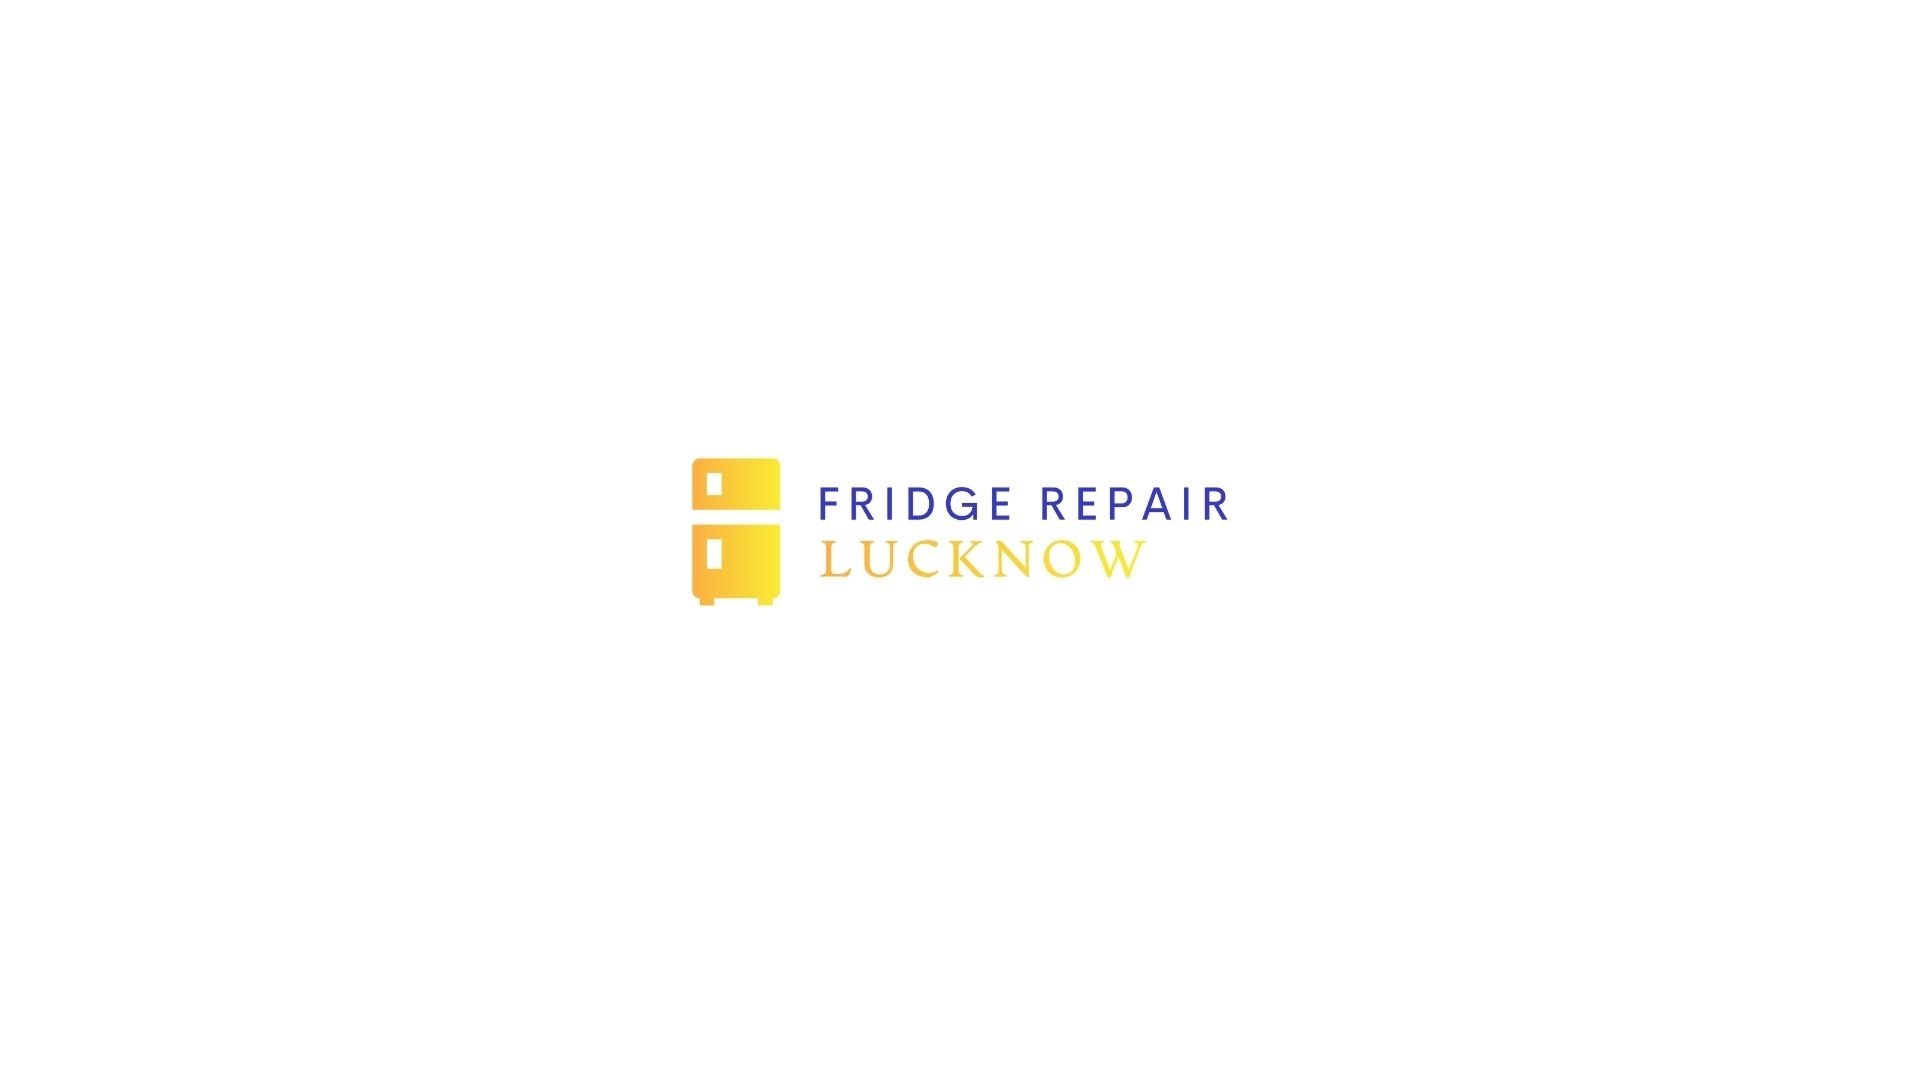 fridgerepair lucknow Profile Picture